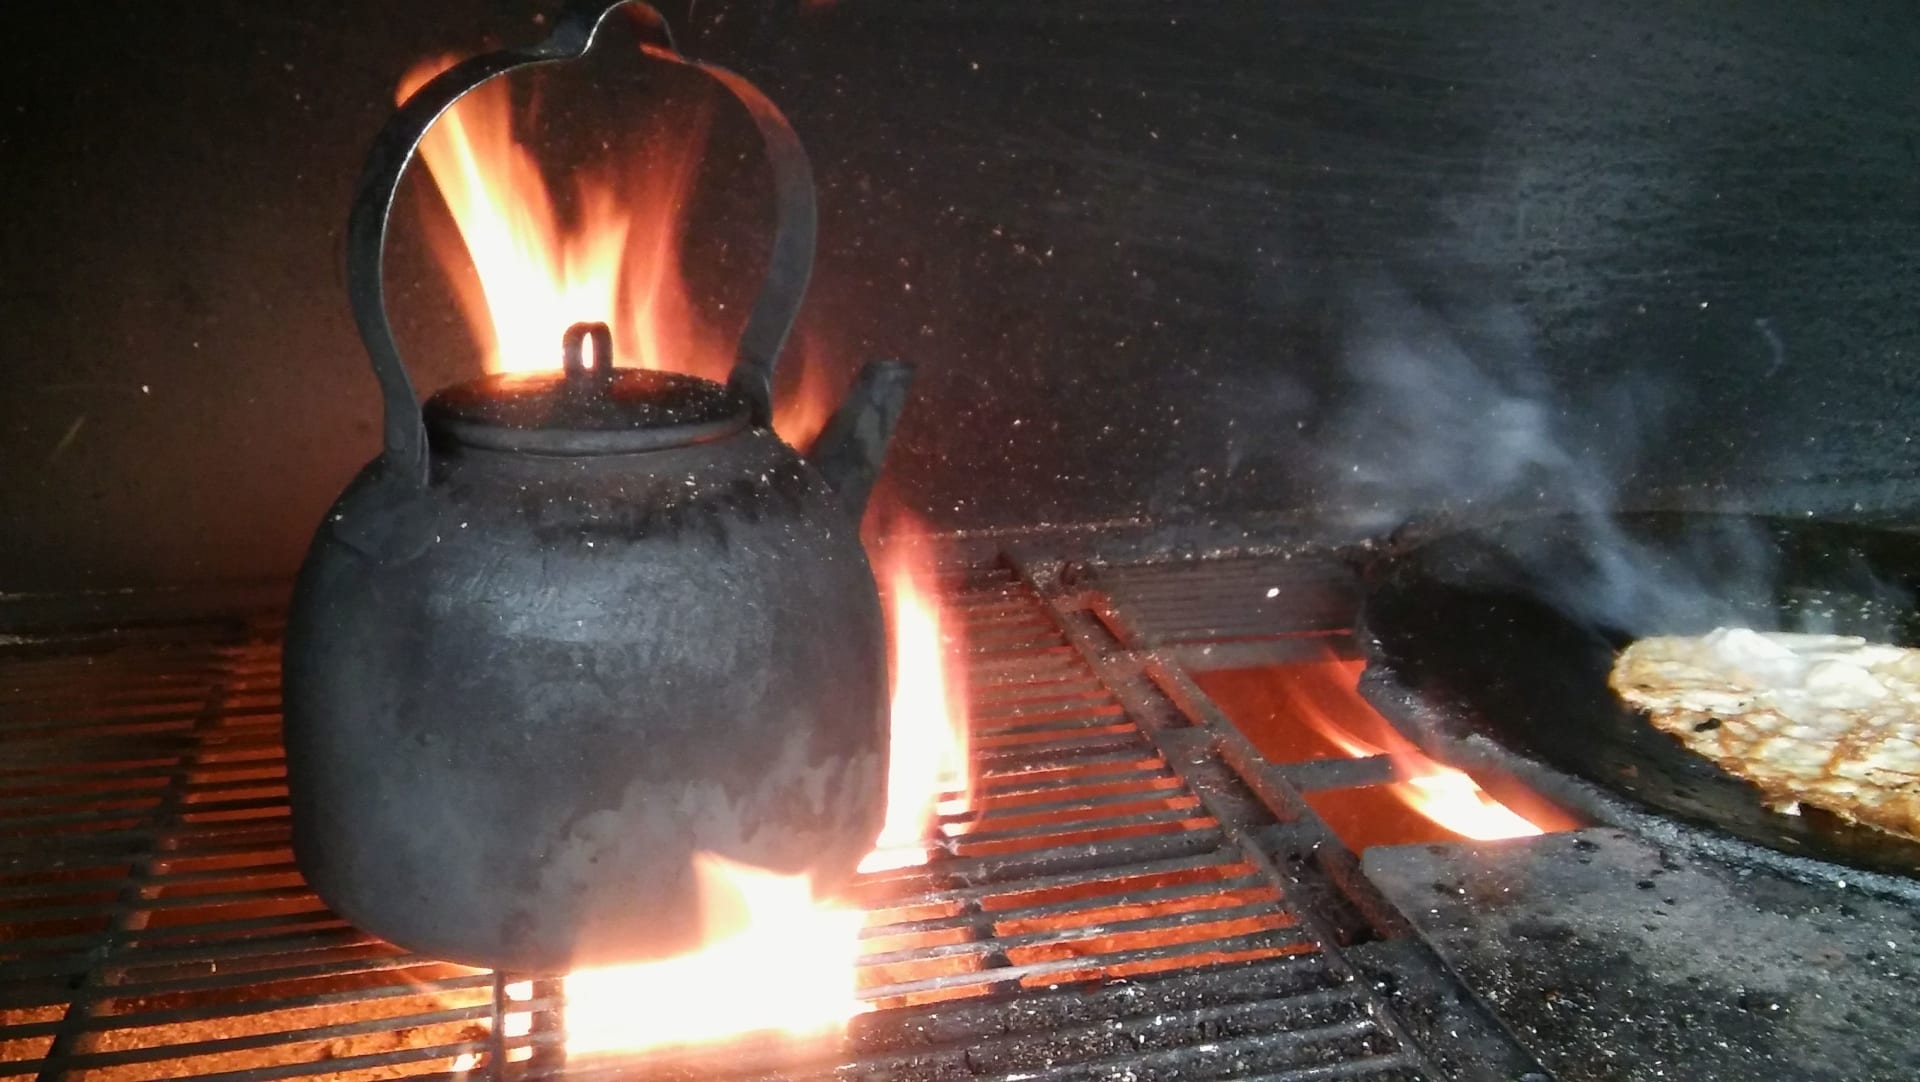 Campfire black pot